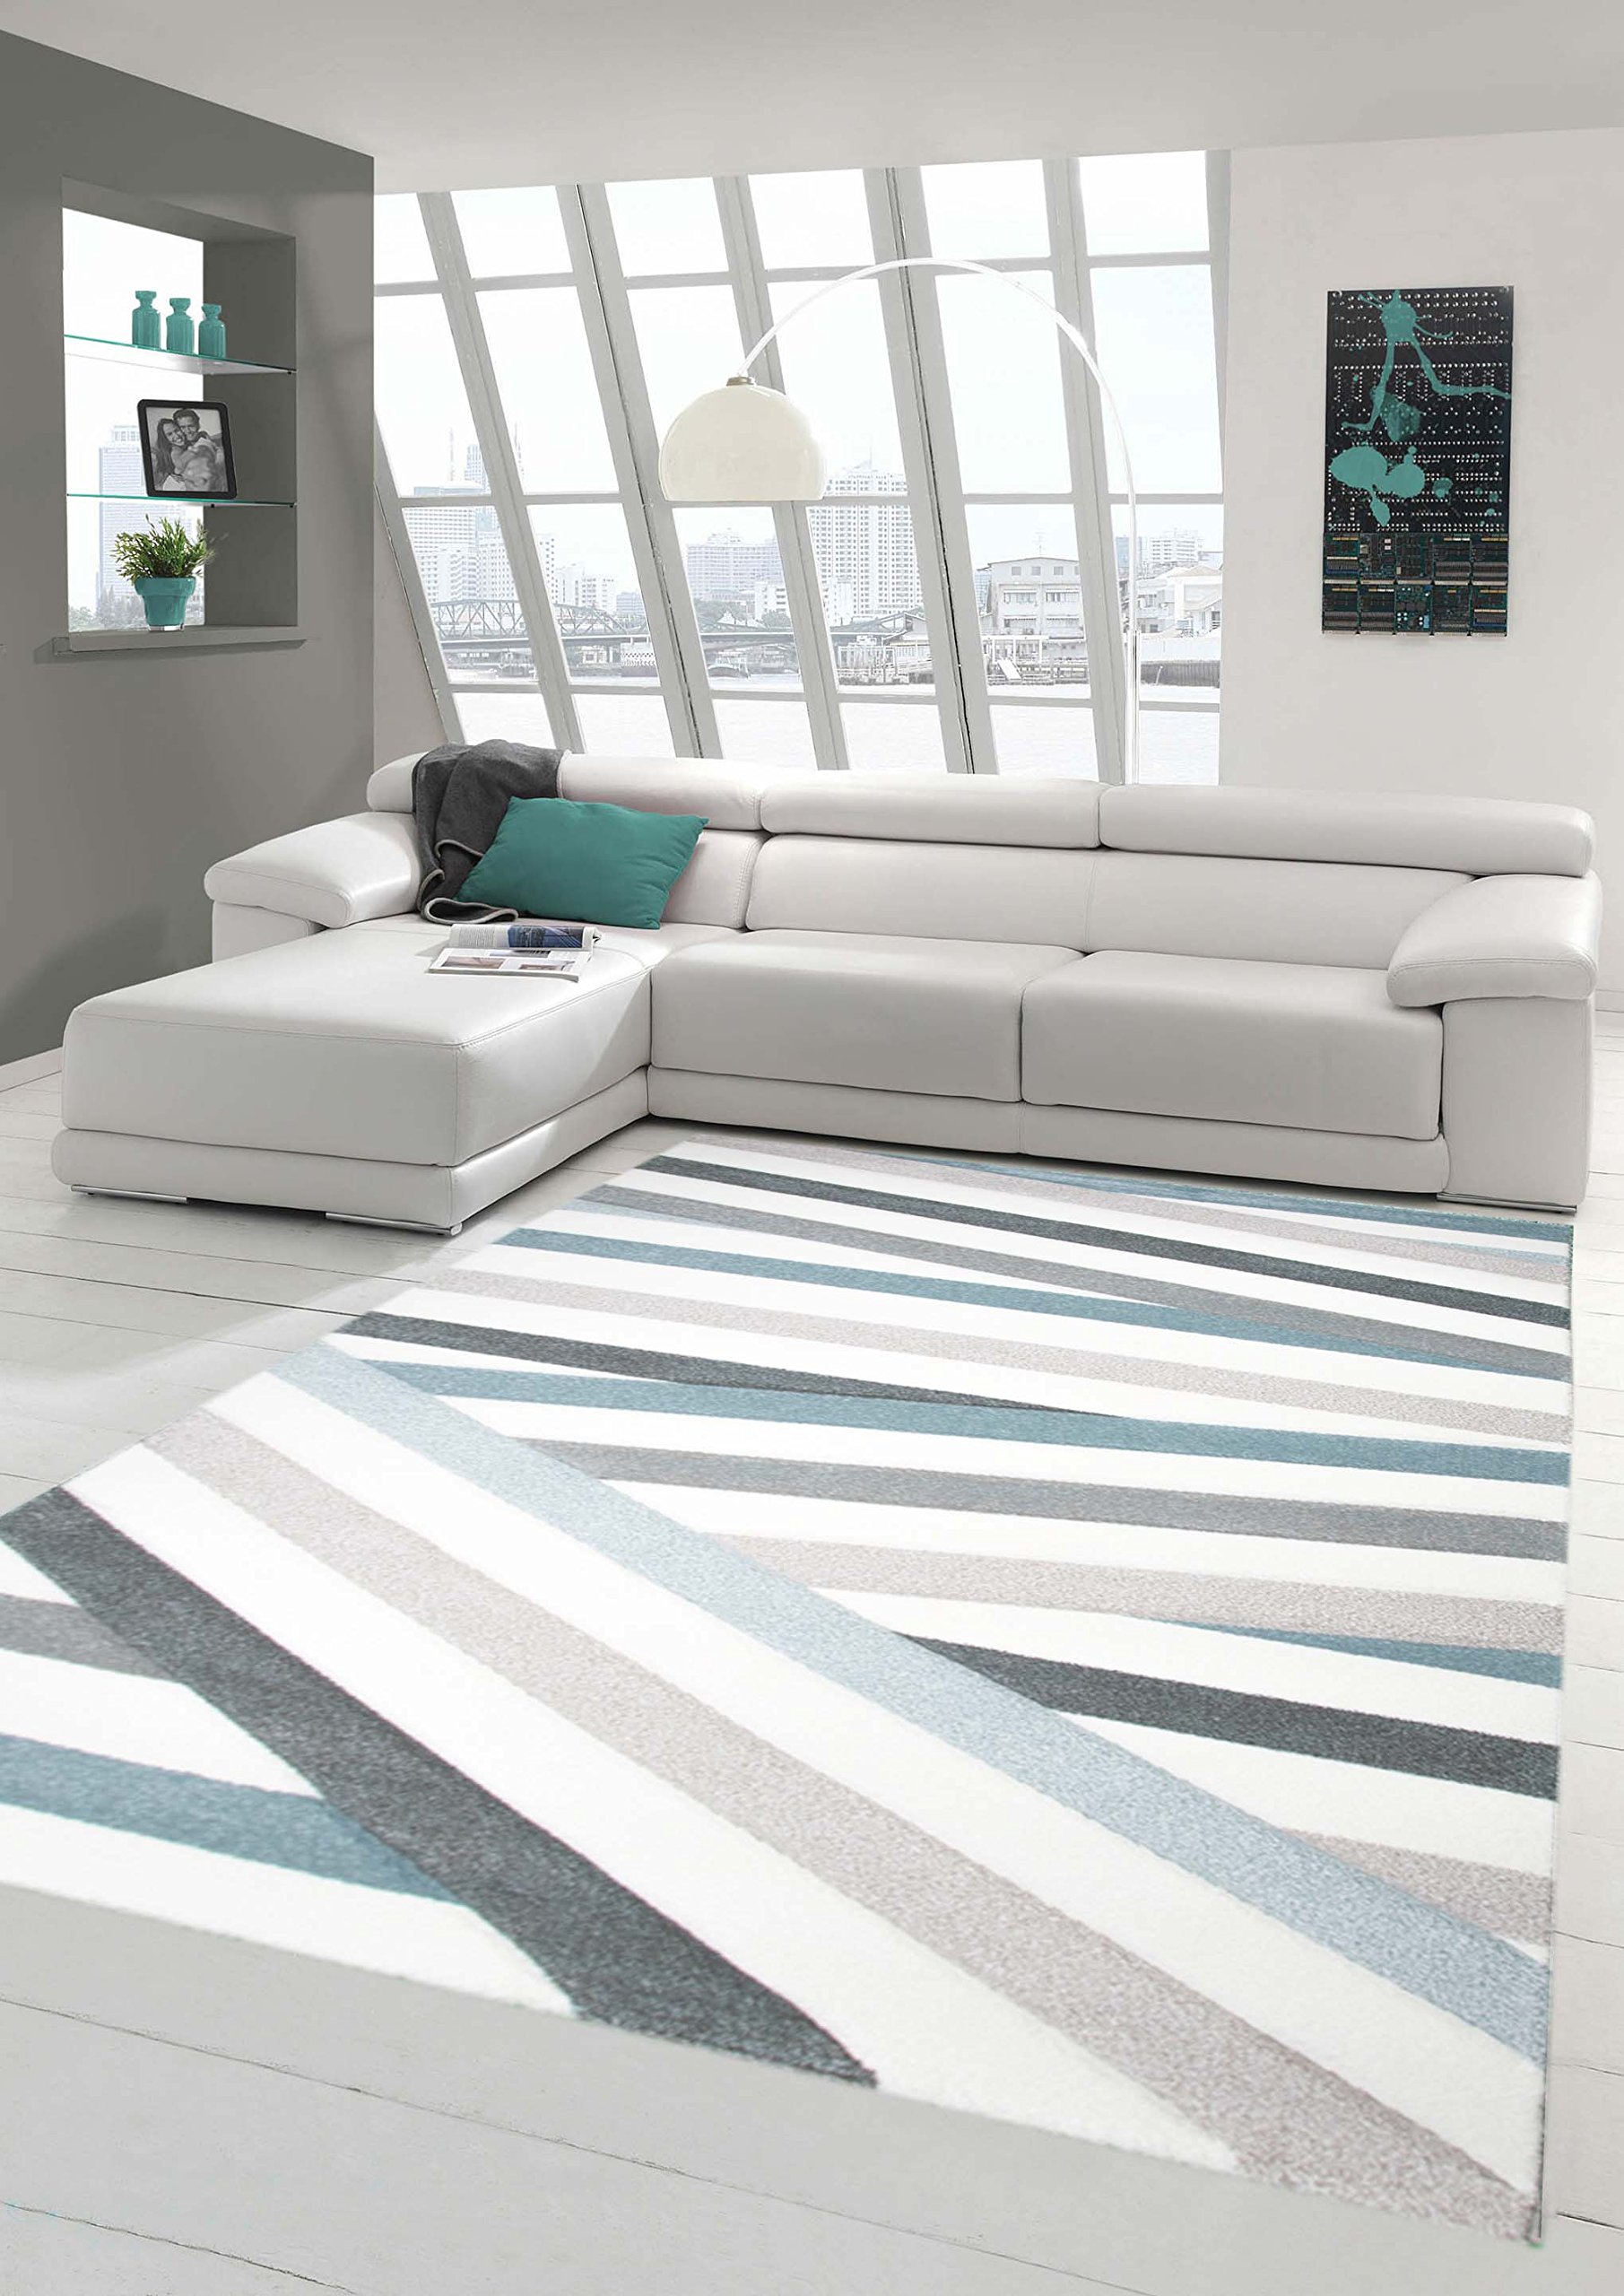 Traum Teppich Designerteppich Moderner Teppich Wohnzimmerteppich Kurzflor Teppich mit Konturenschnitt Gestreift Grau Blau Weiß, Größe 80x150 cm